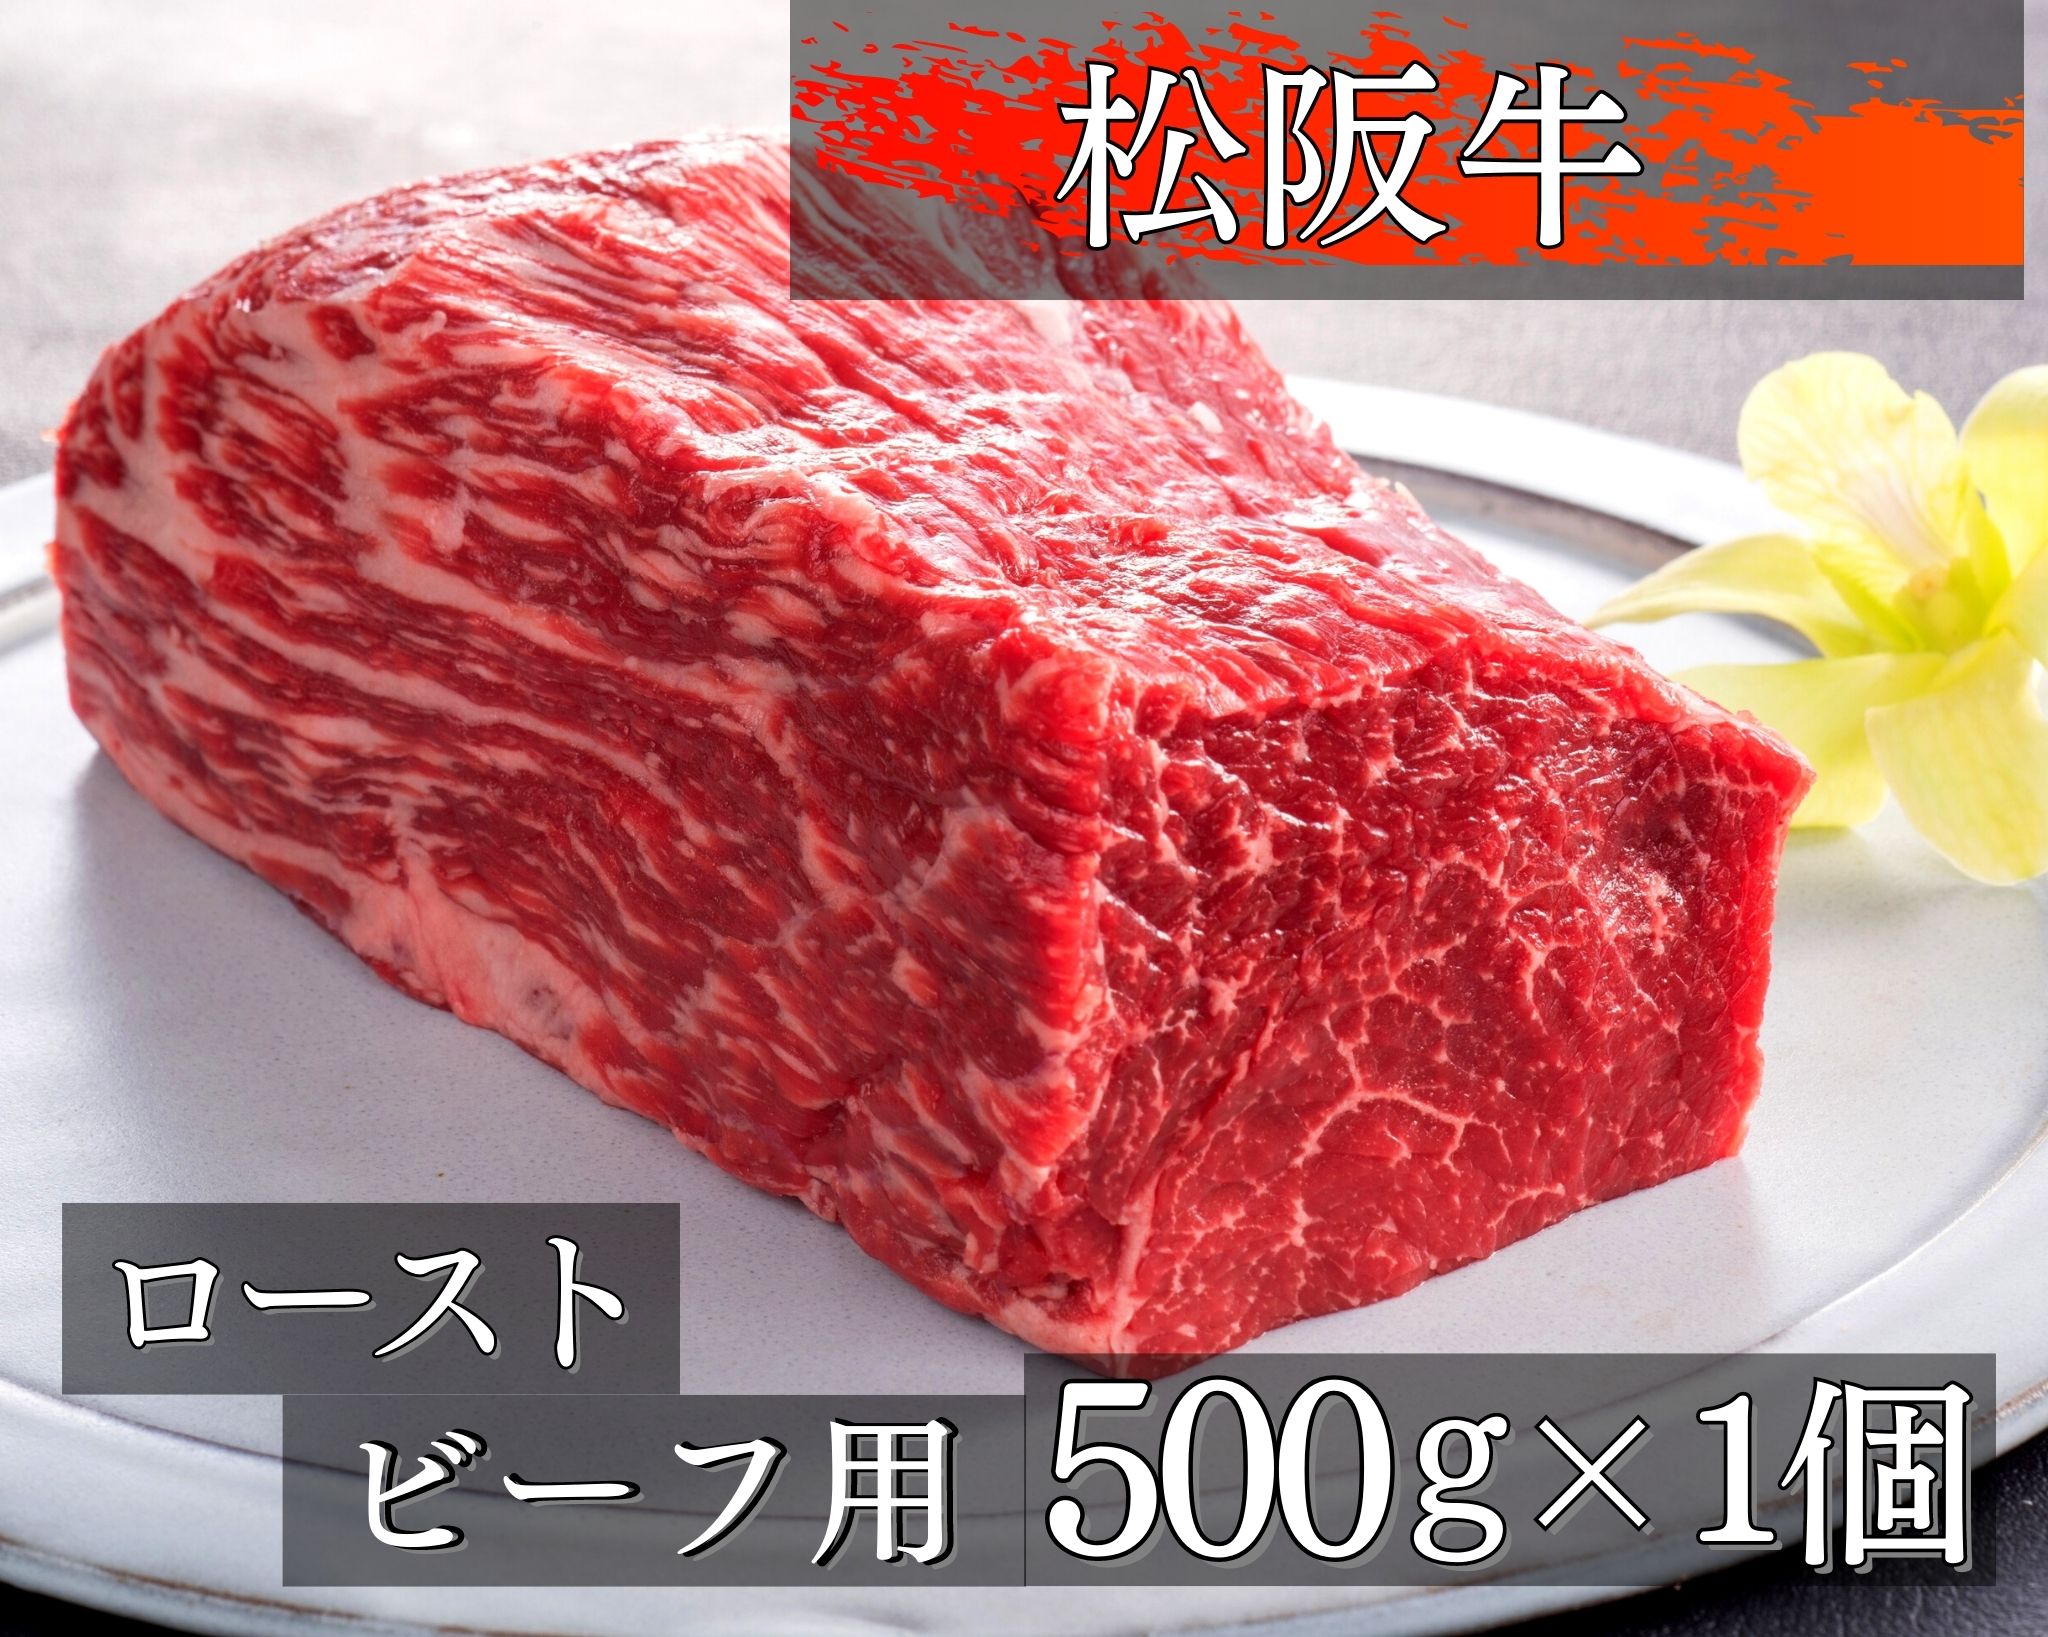 21位! 口コミ数「0件」評価「0」470 松阪牛ローストビーフ用ブロック肉500g